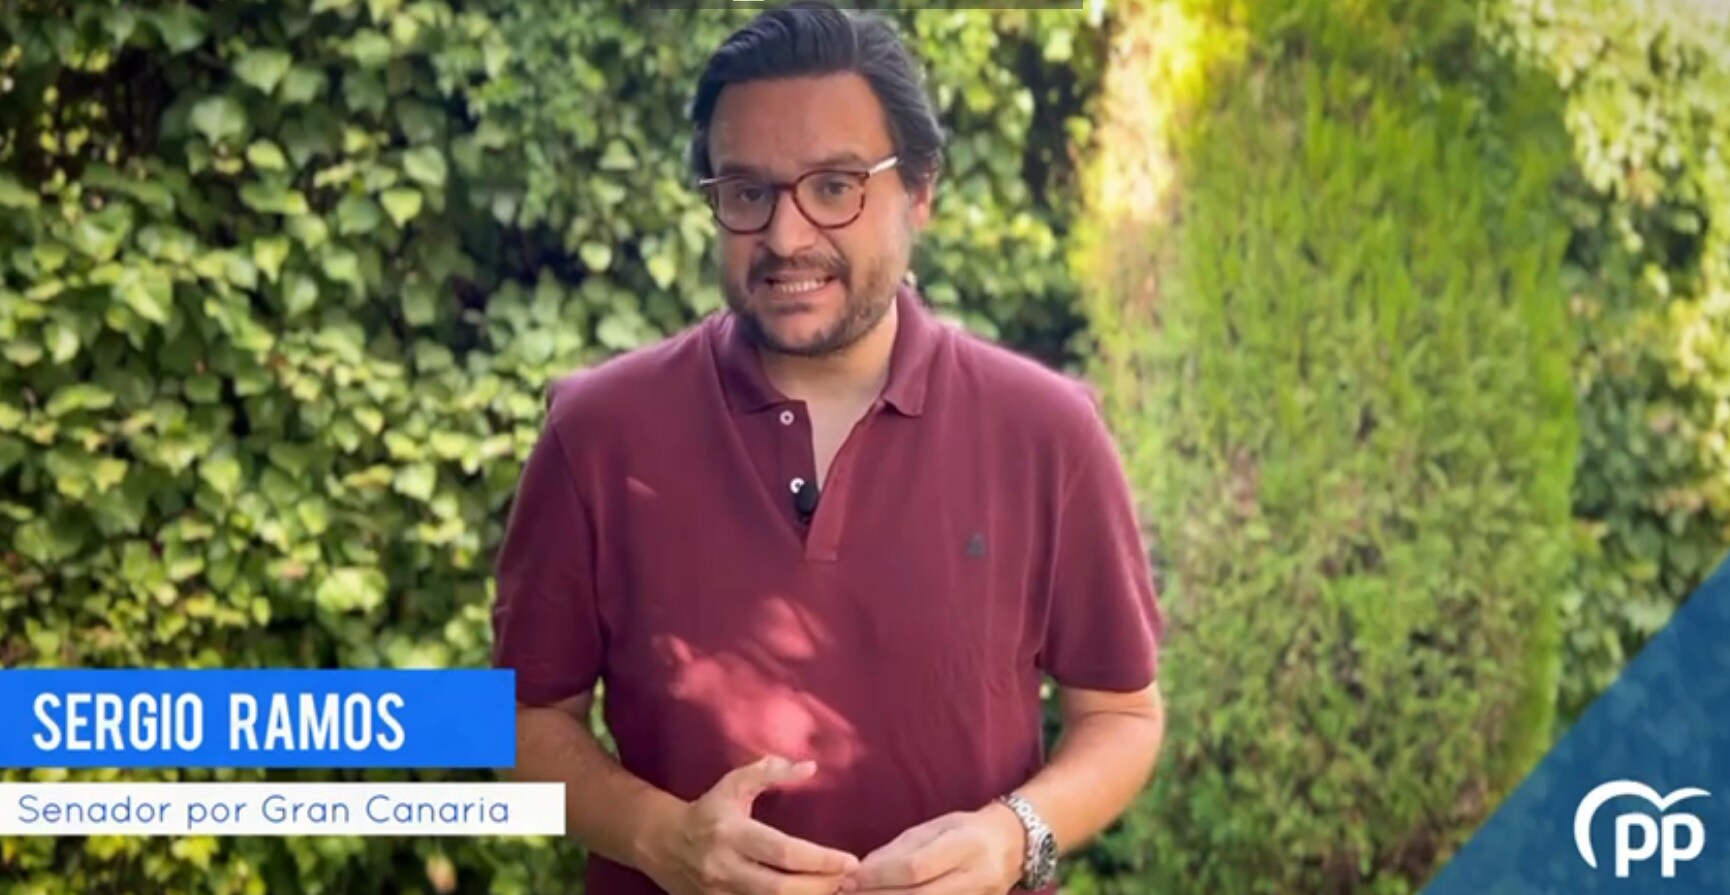 El vídeo de Sergio Ramos (PP) sobre Sánchez se vuelve viral 